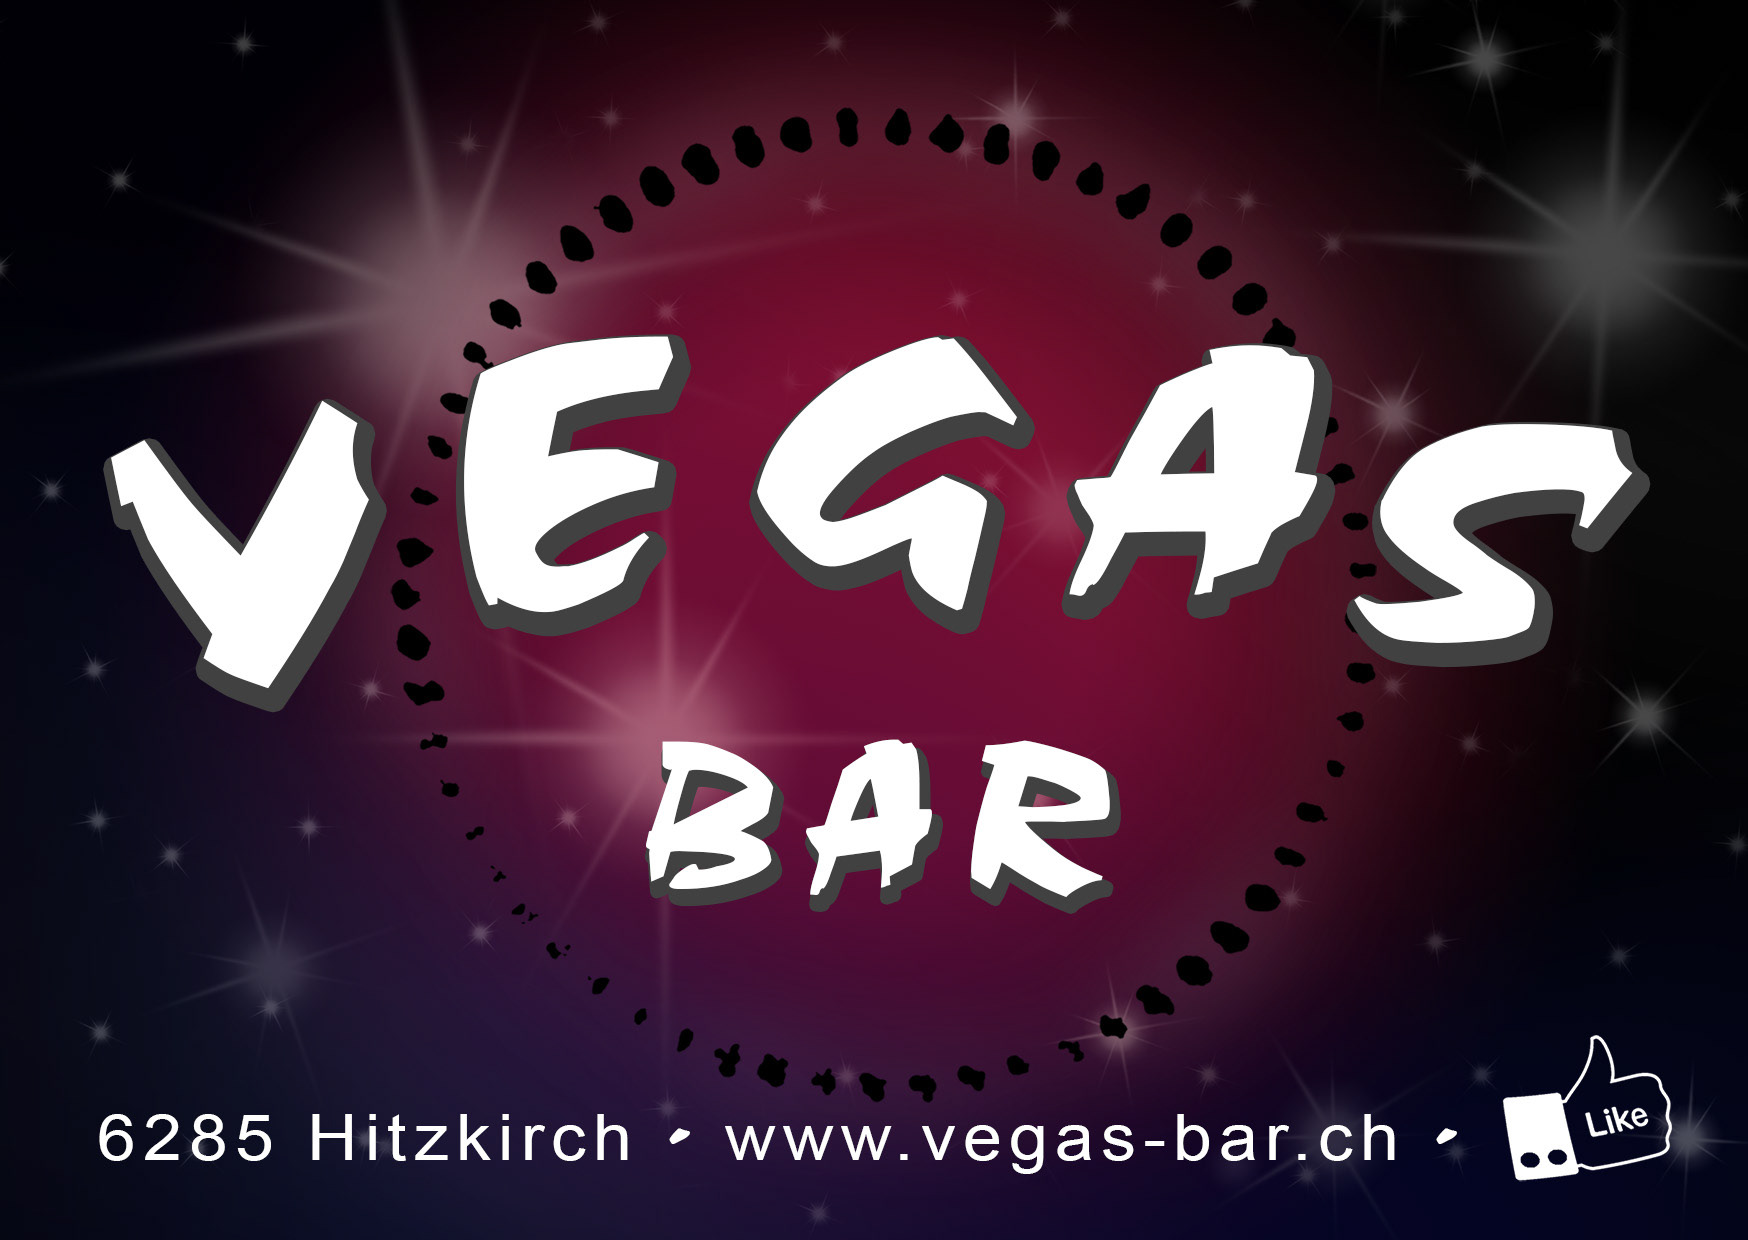 (c) Vegas-bar.ch